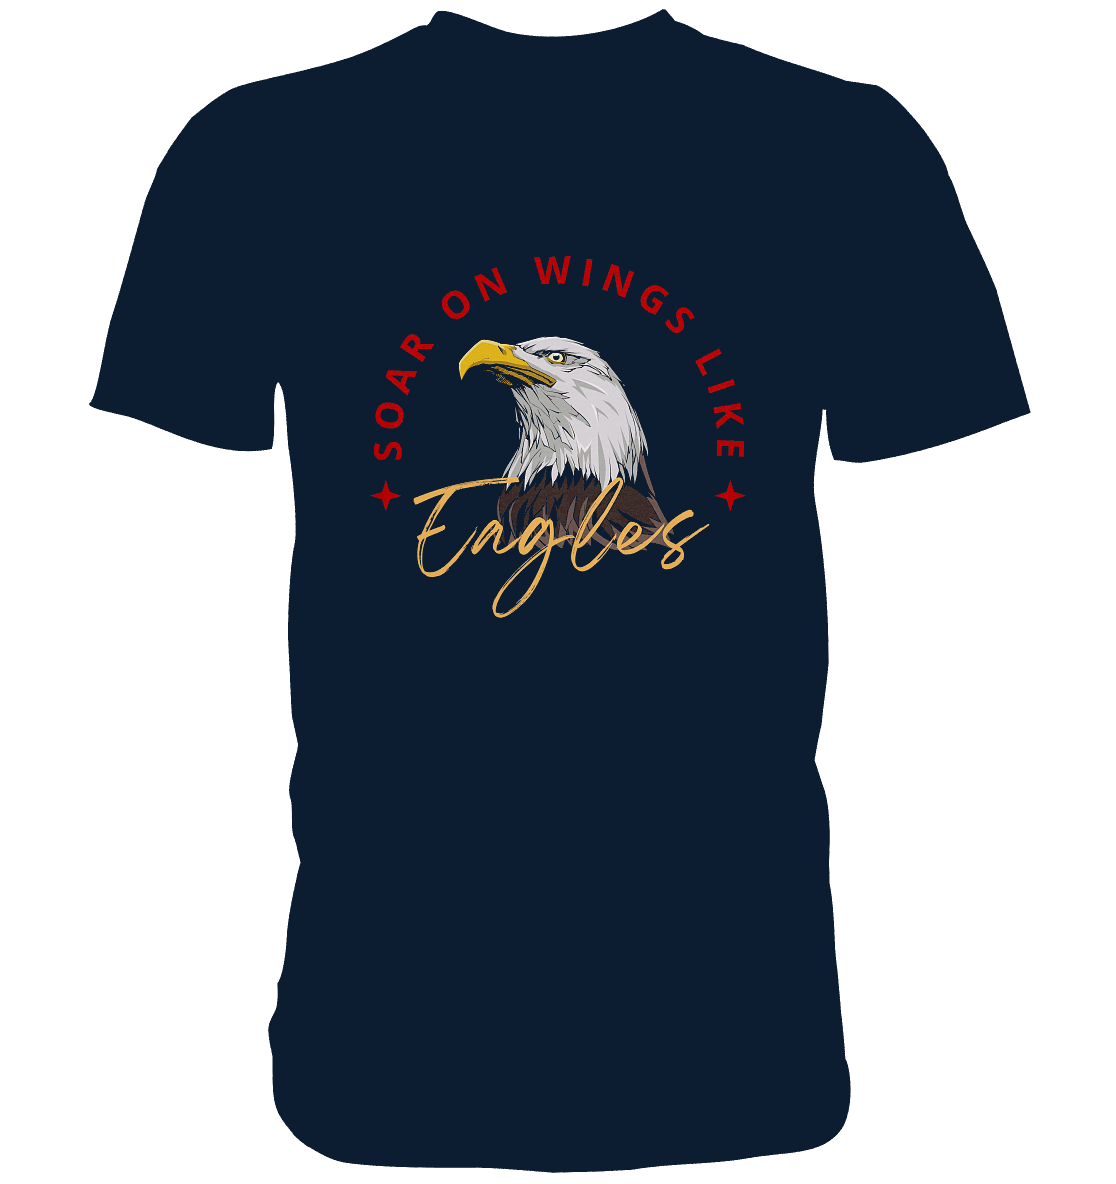 Flügel der Hoffnung - Inspiriert von Jesaja 40:31  - Premium Shirt